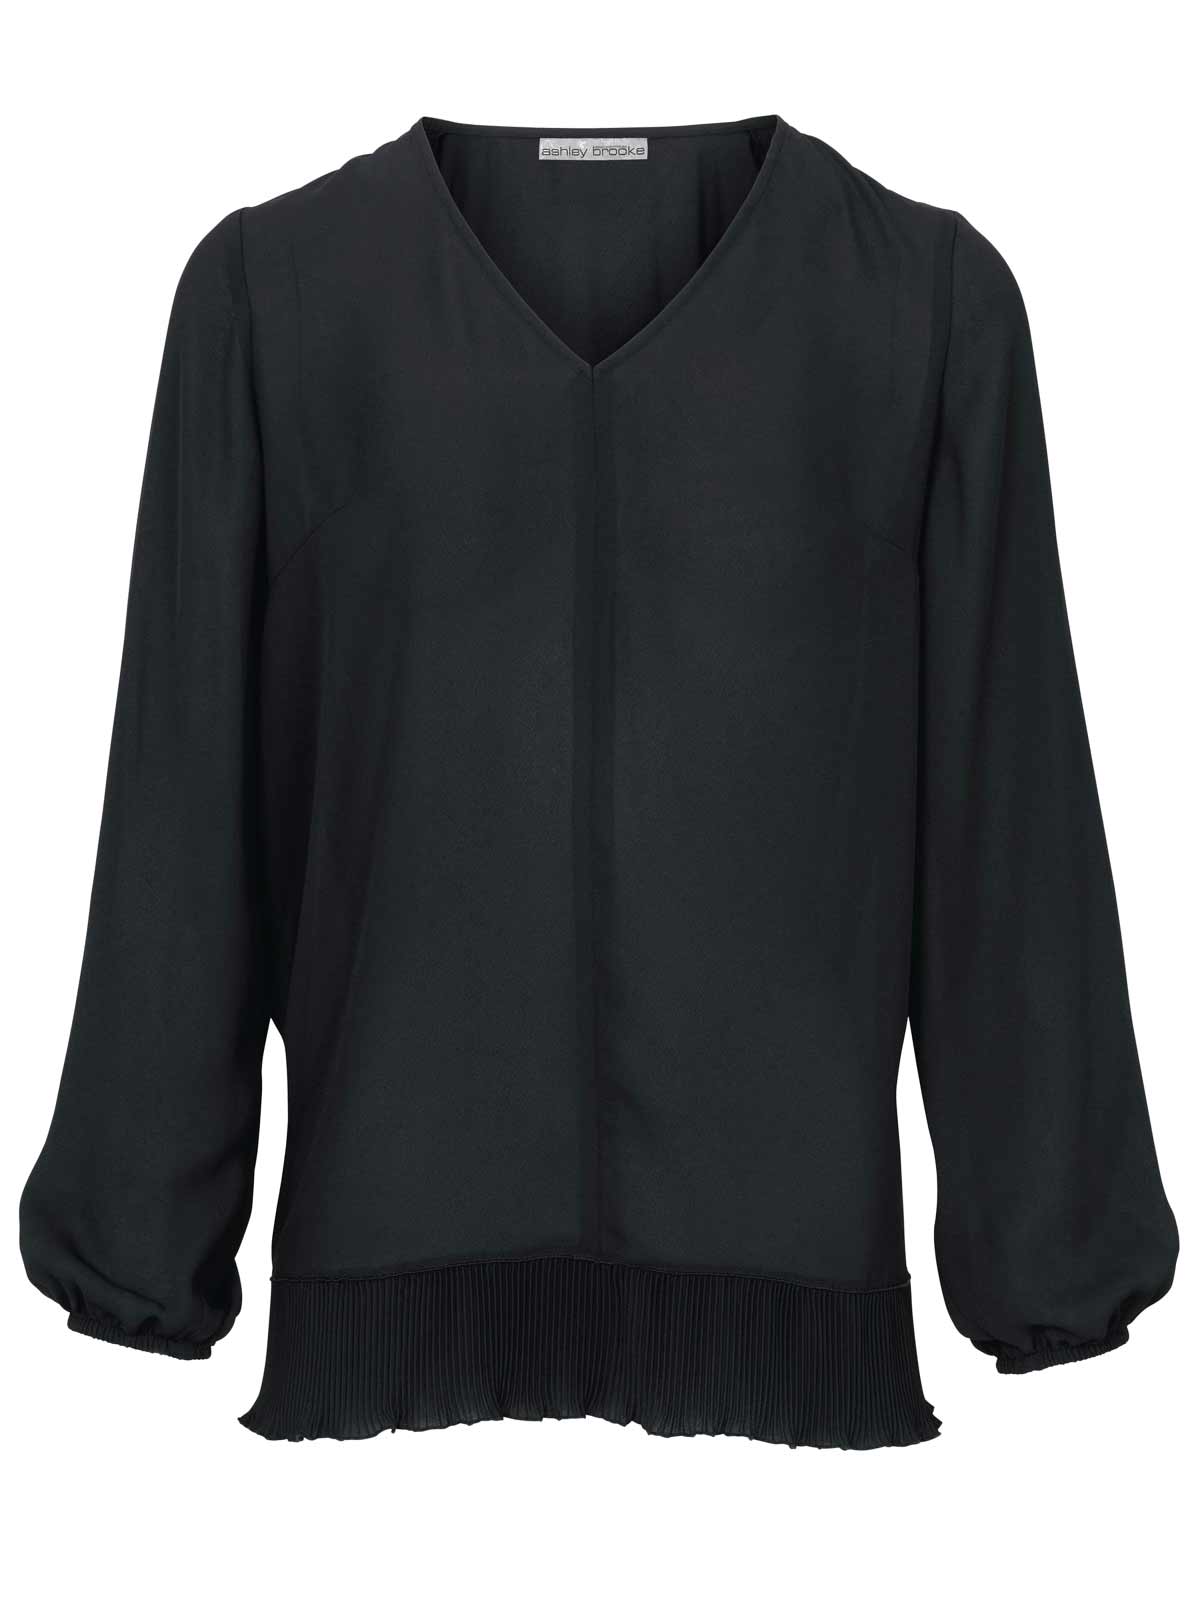 Ashley Brooke Damen Designer-Bluse mit Plisseesaum, schwarz